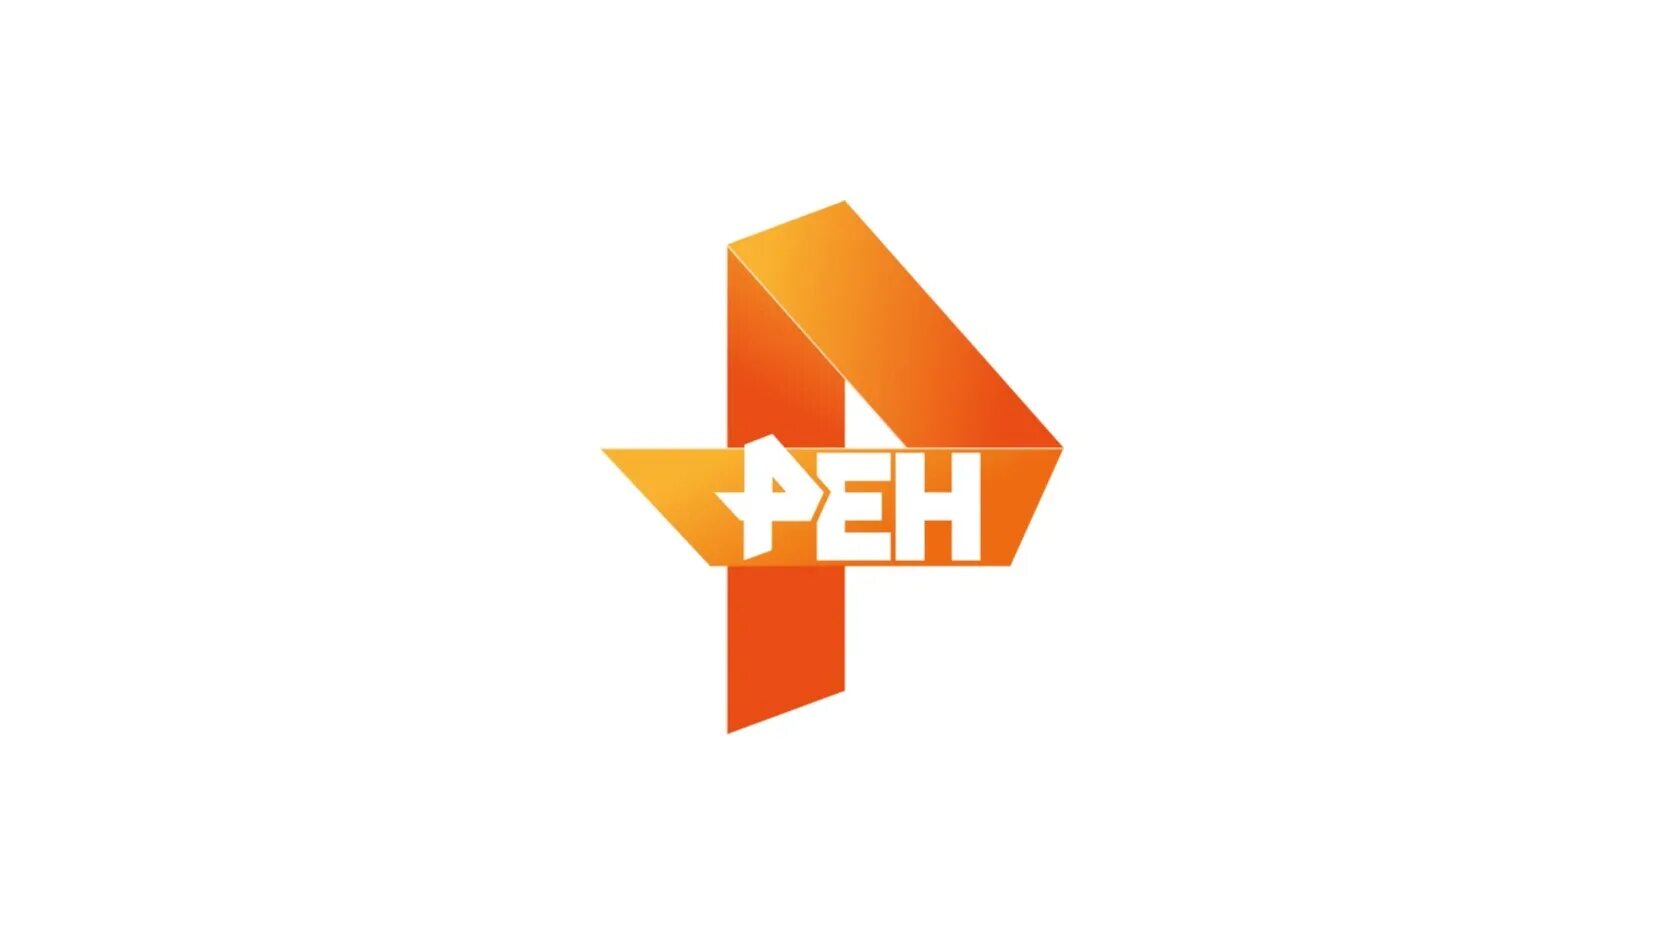 Ren tv live. РЕН ТВ. Канал РЕН ТВ. Значок РЕН ТВ. Логотип РЕН ТВ 2021.